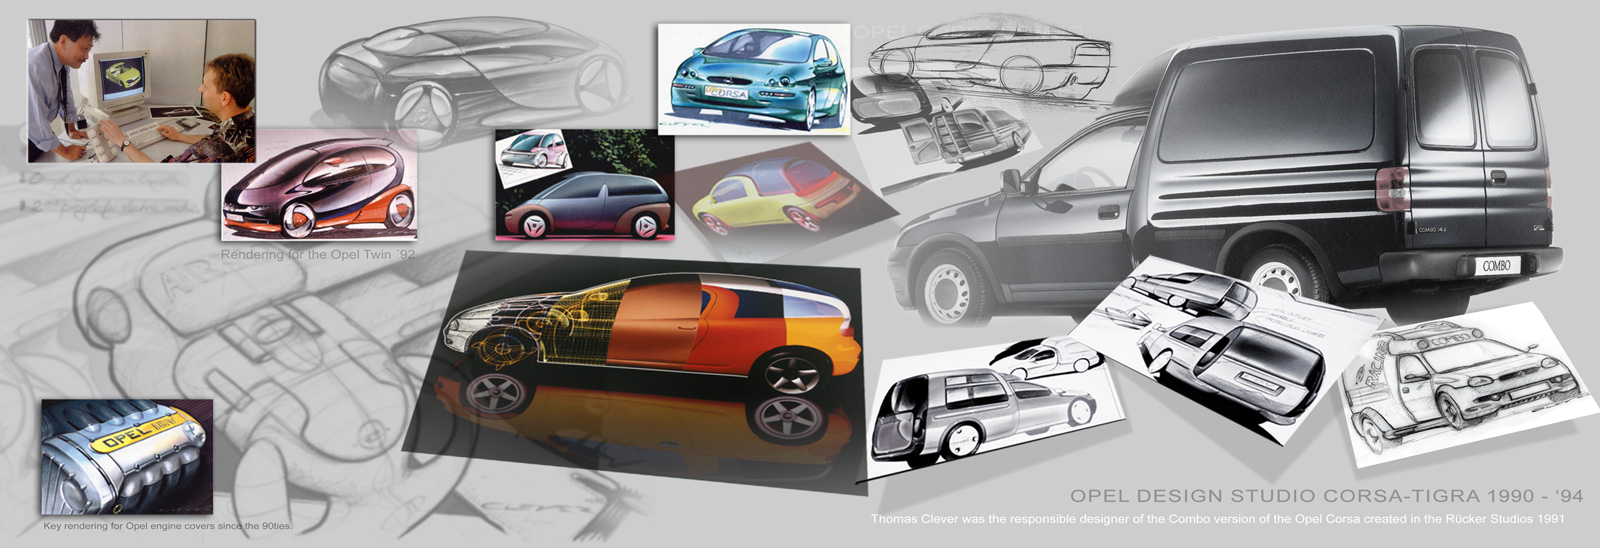 Im Opel Design Studio Corsa geschaffene Designs von Th. Clever